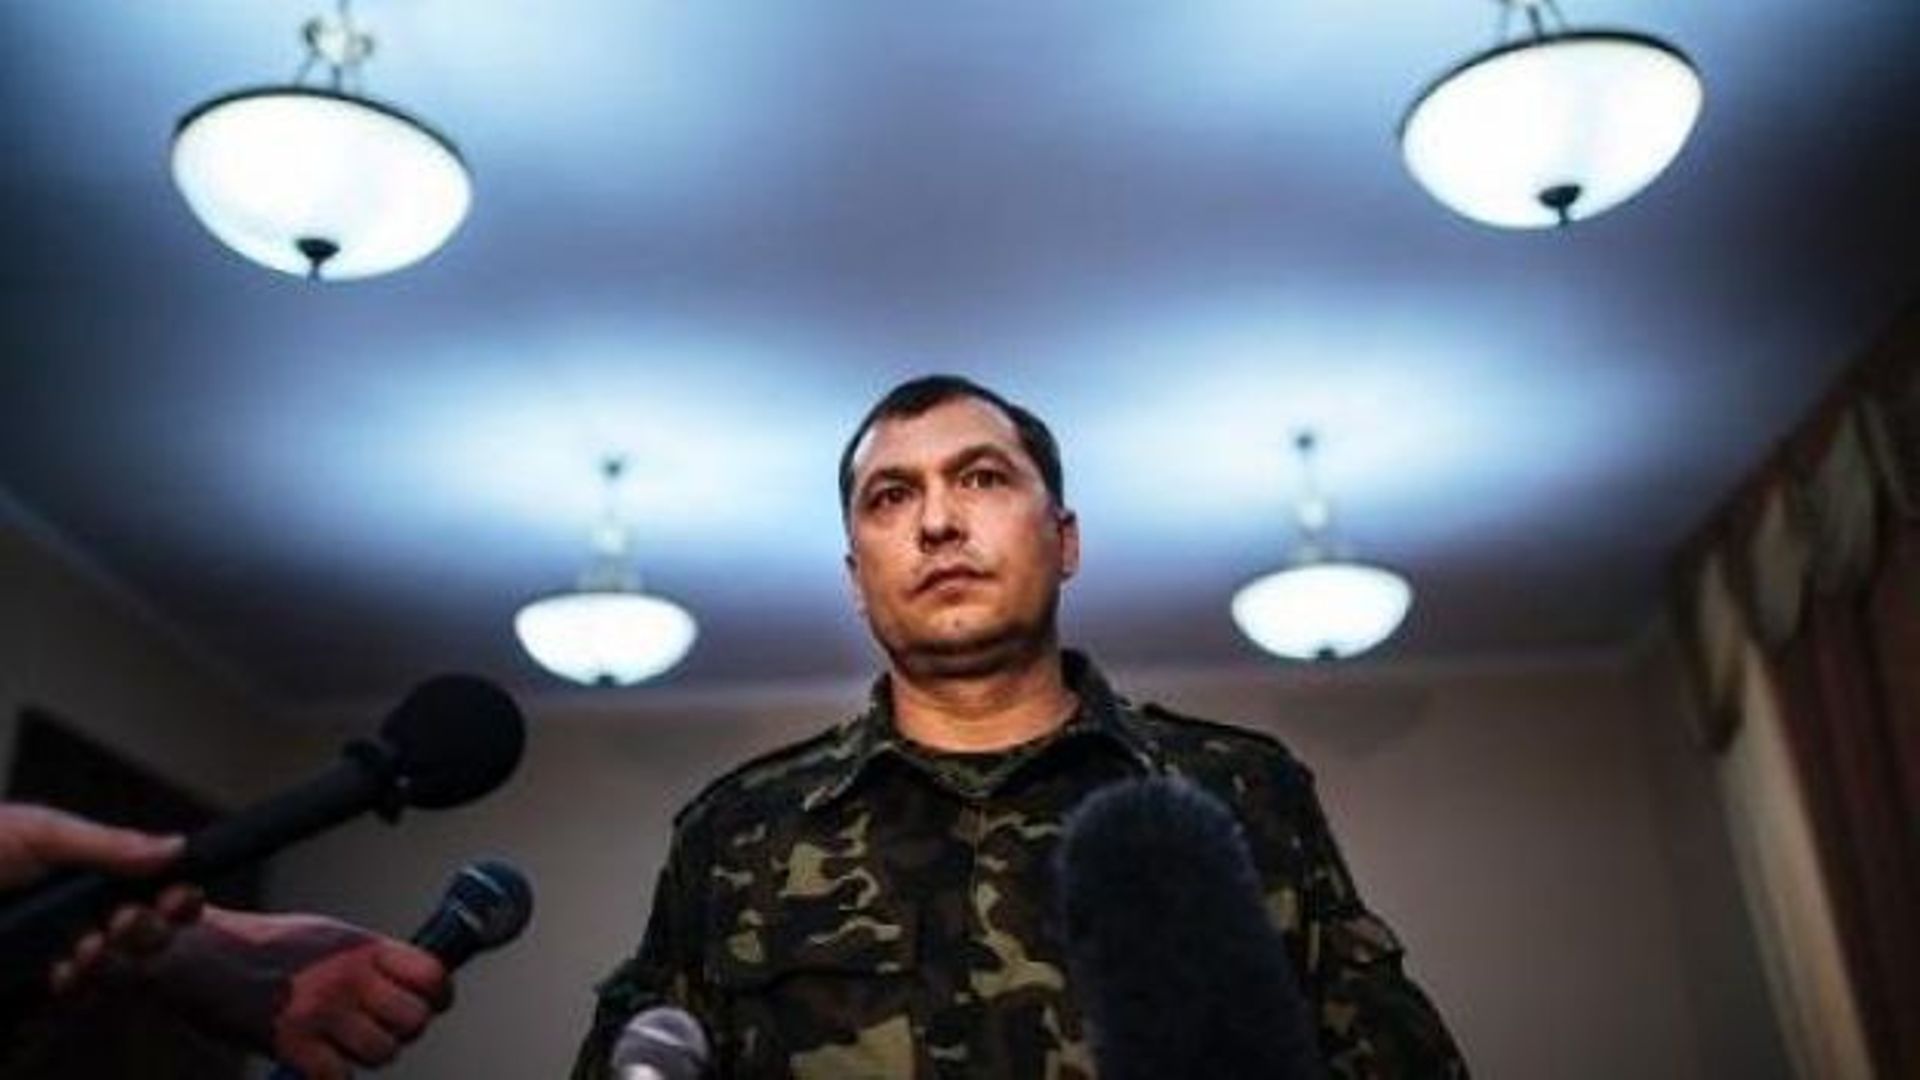  « previous Le commandant de l'armée du sud-est de l'Ukraine autoproclamée, Valeriy Bolotov lors d'une conférence de presse après avoir été nommé "gouverneur du peuple" à Lugansk, le 21 avril 2014